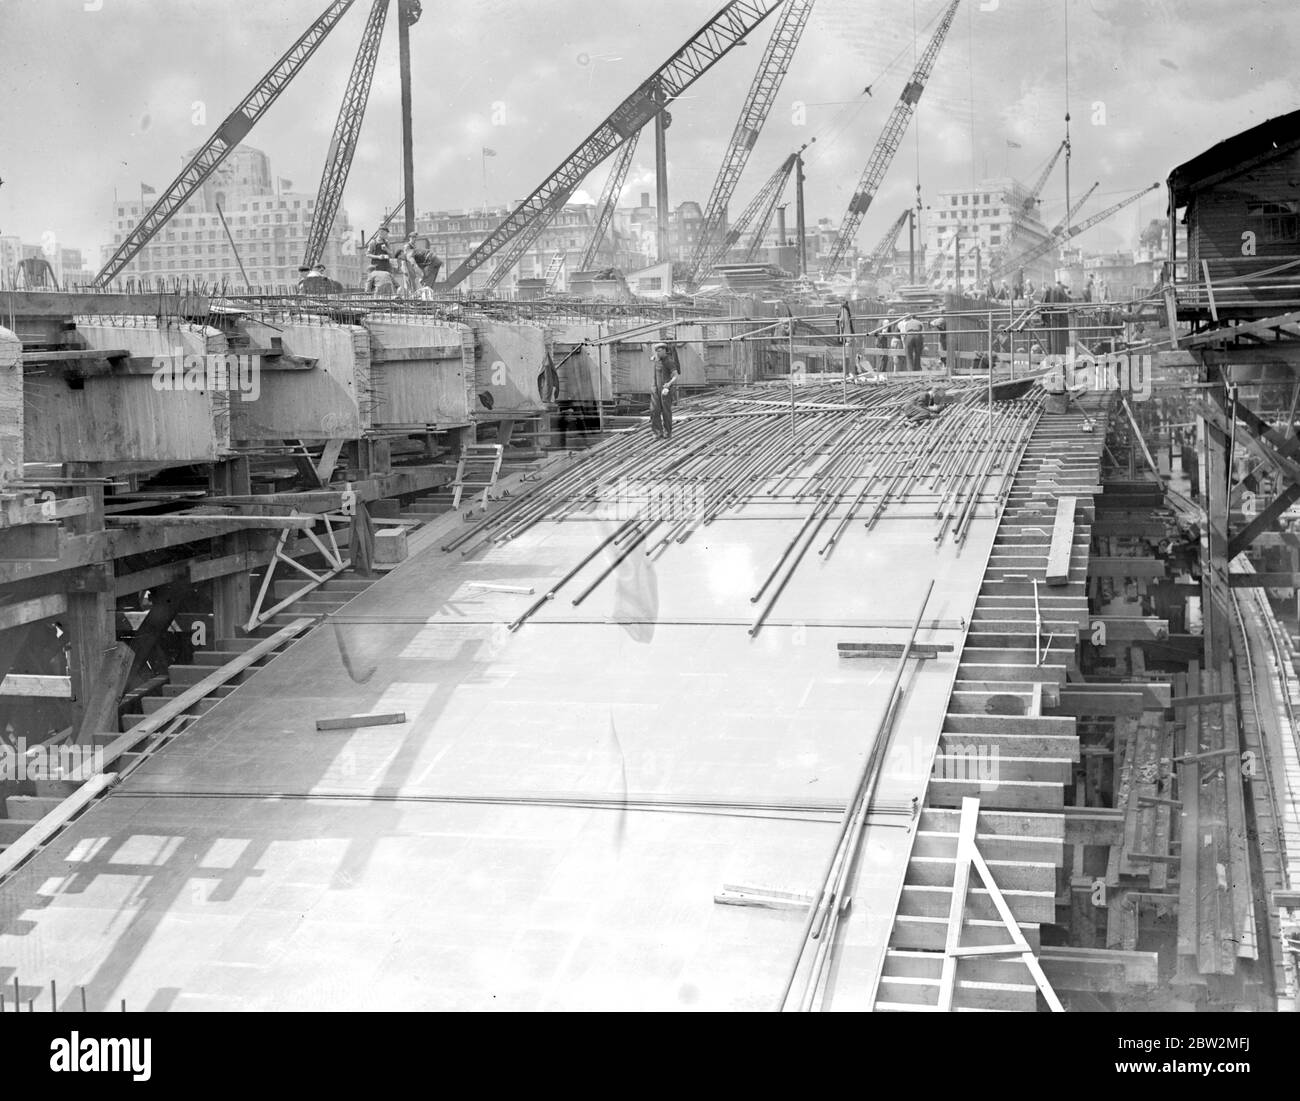 El nuevo puente de Waterloo en construcción, que cubre un tramo de madera pulida de tres capas. La superficie que iguala una pista de baile de primera clase. 17 de julio de 1939. Foto de stock